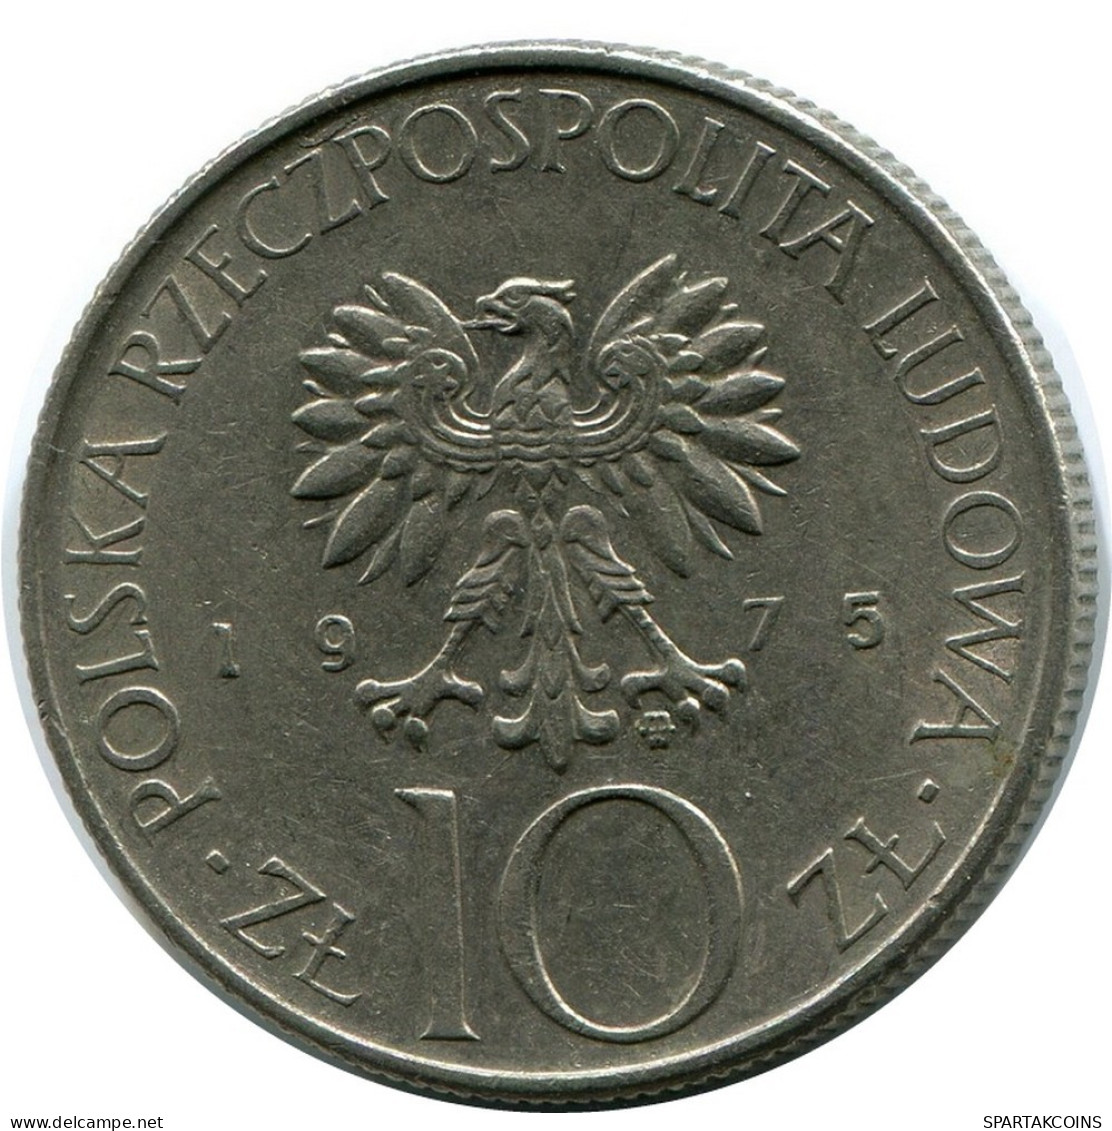 10 ZLOTYCH 1975 POLAND Coin #AR117.U.A - Pologne